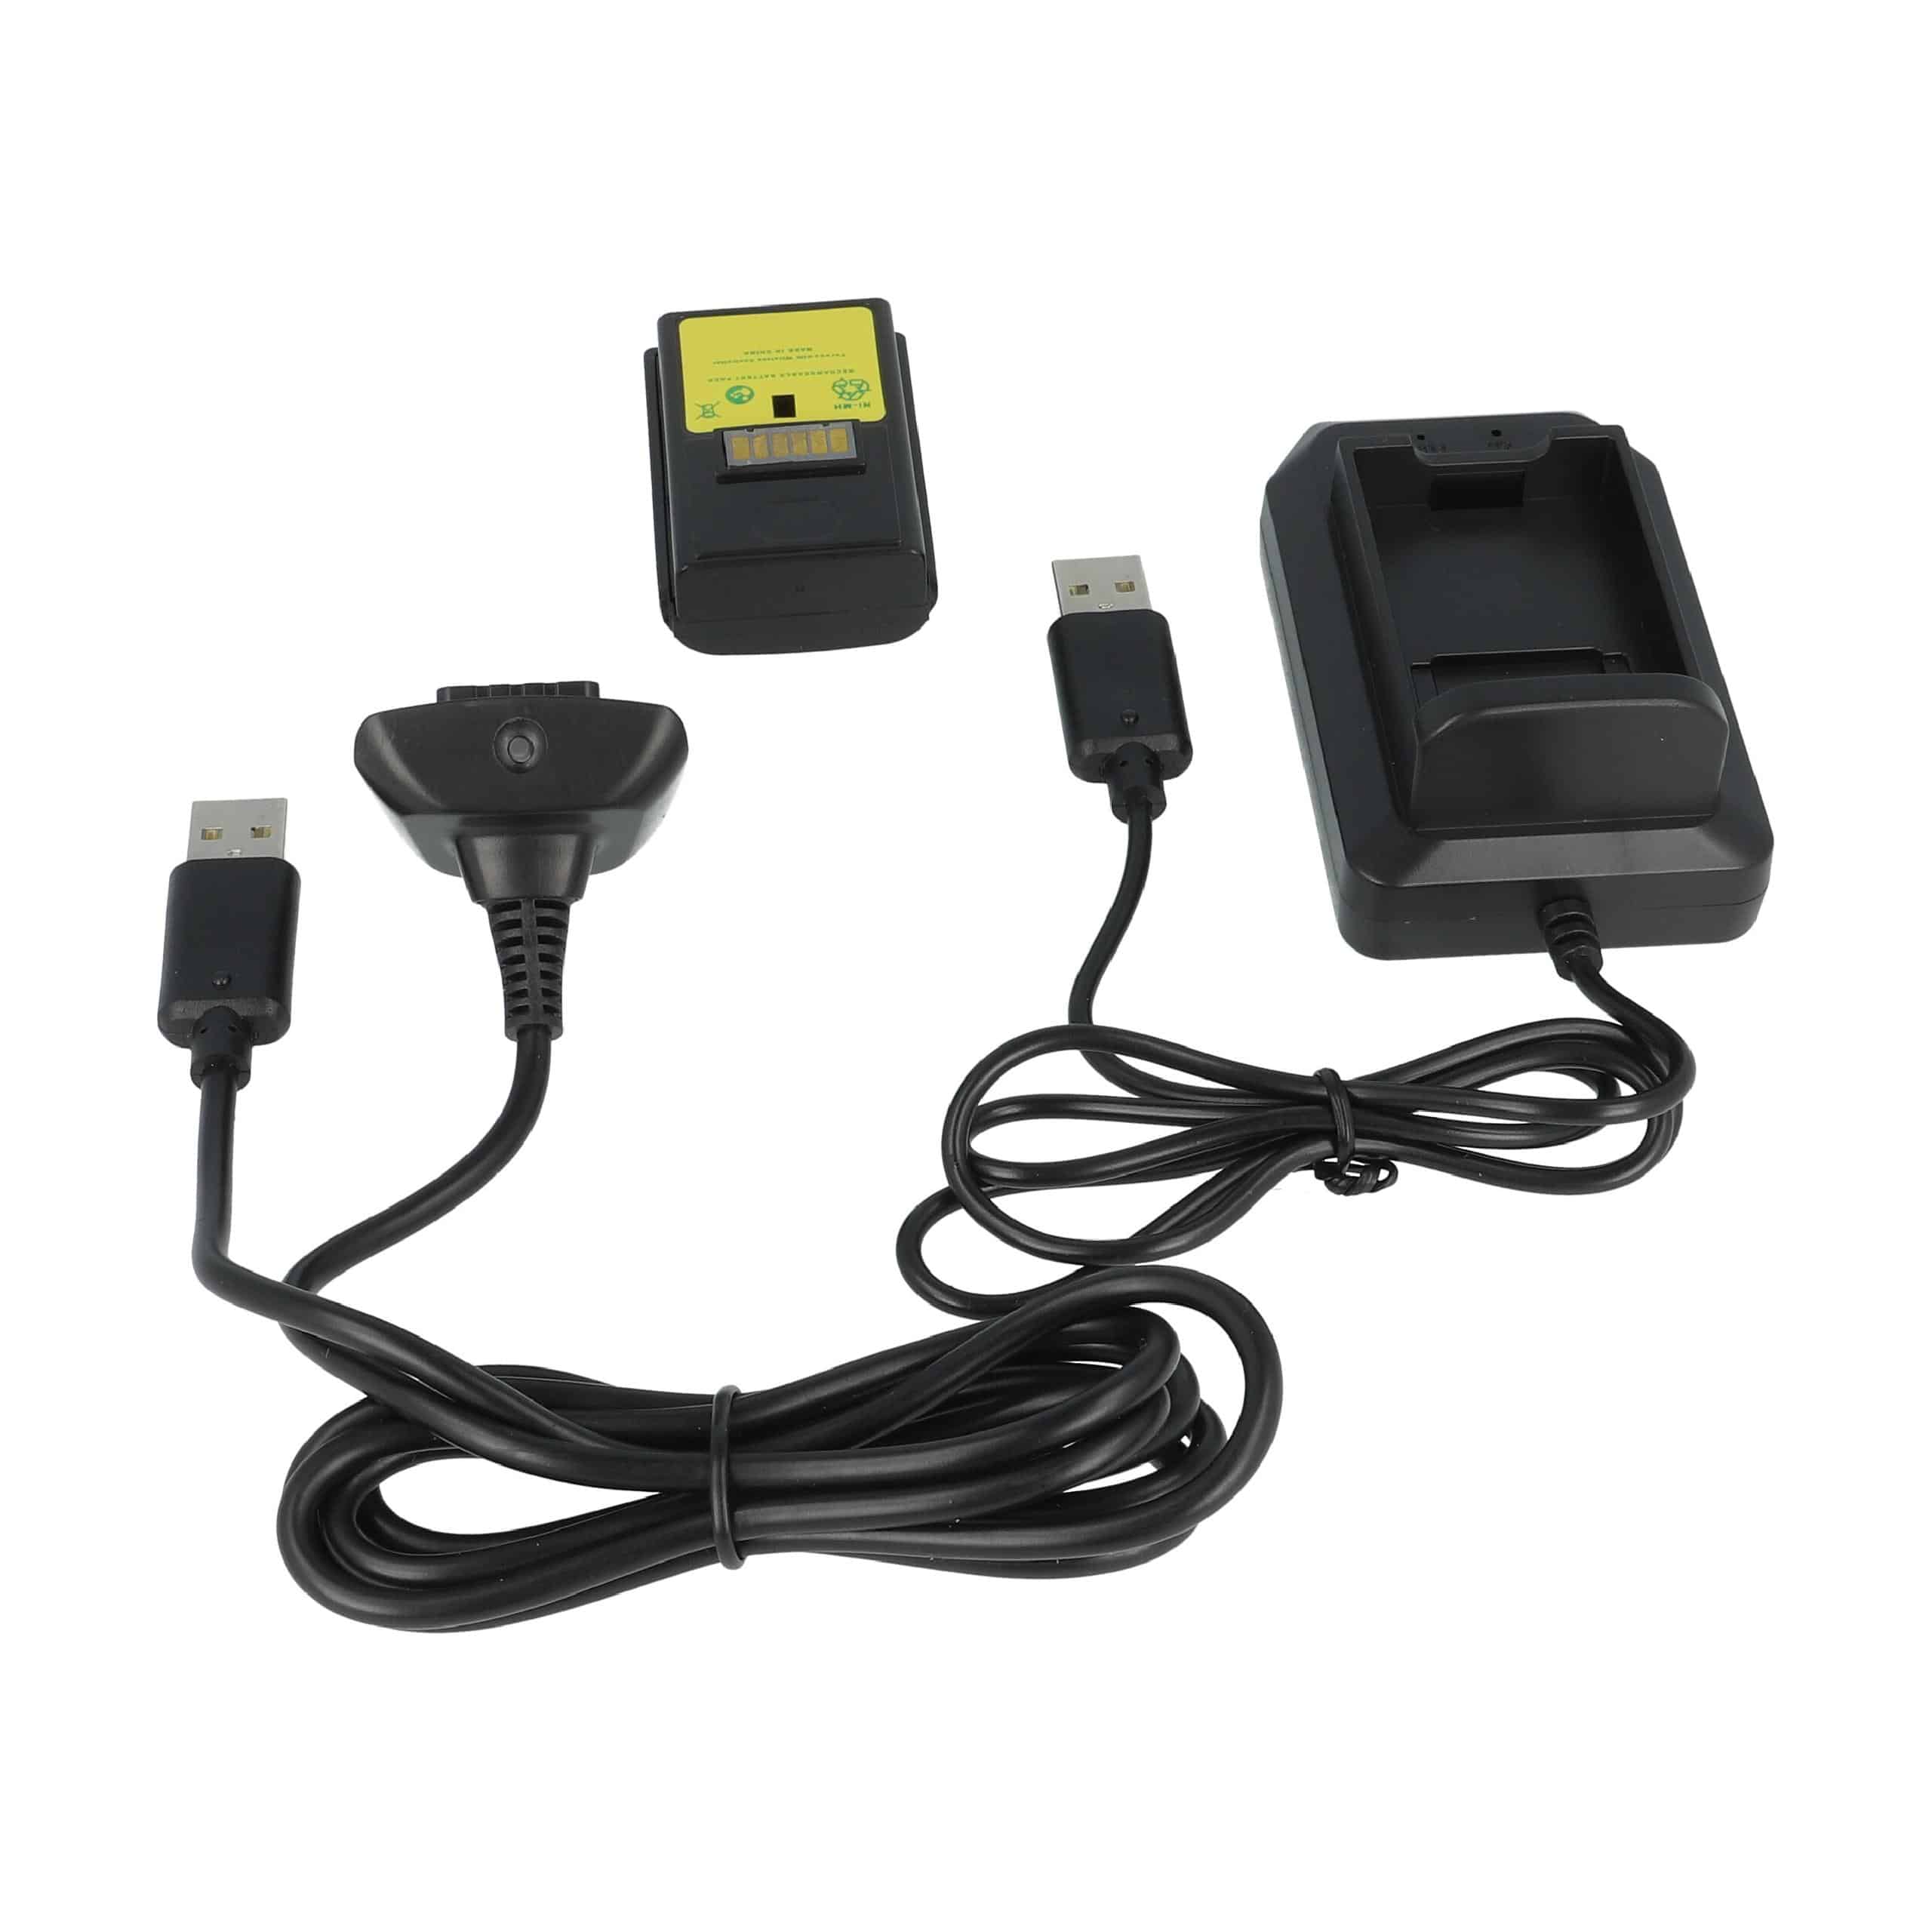 vhbw Kit carga y juega - 1x cargador, 1x cable de carga, 1x batería negro